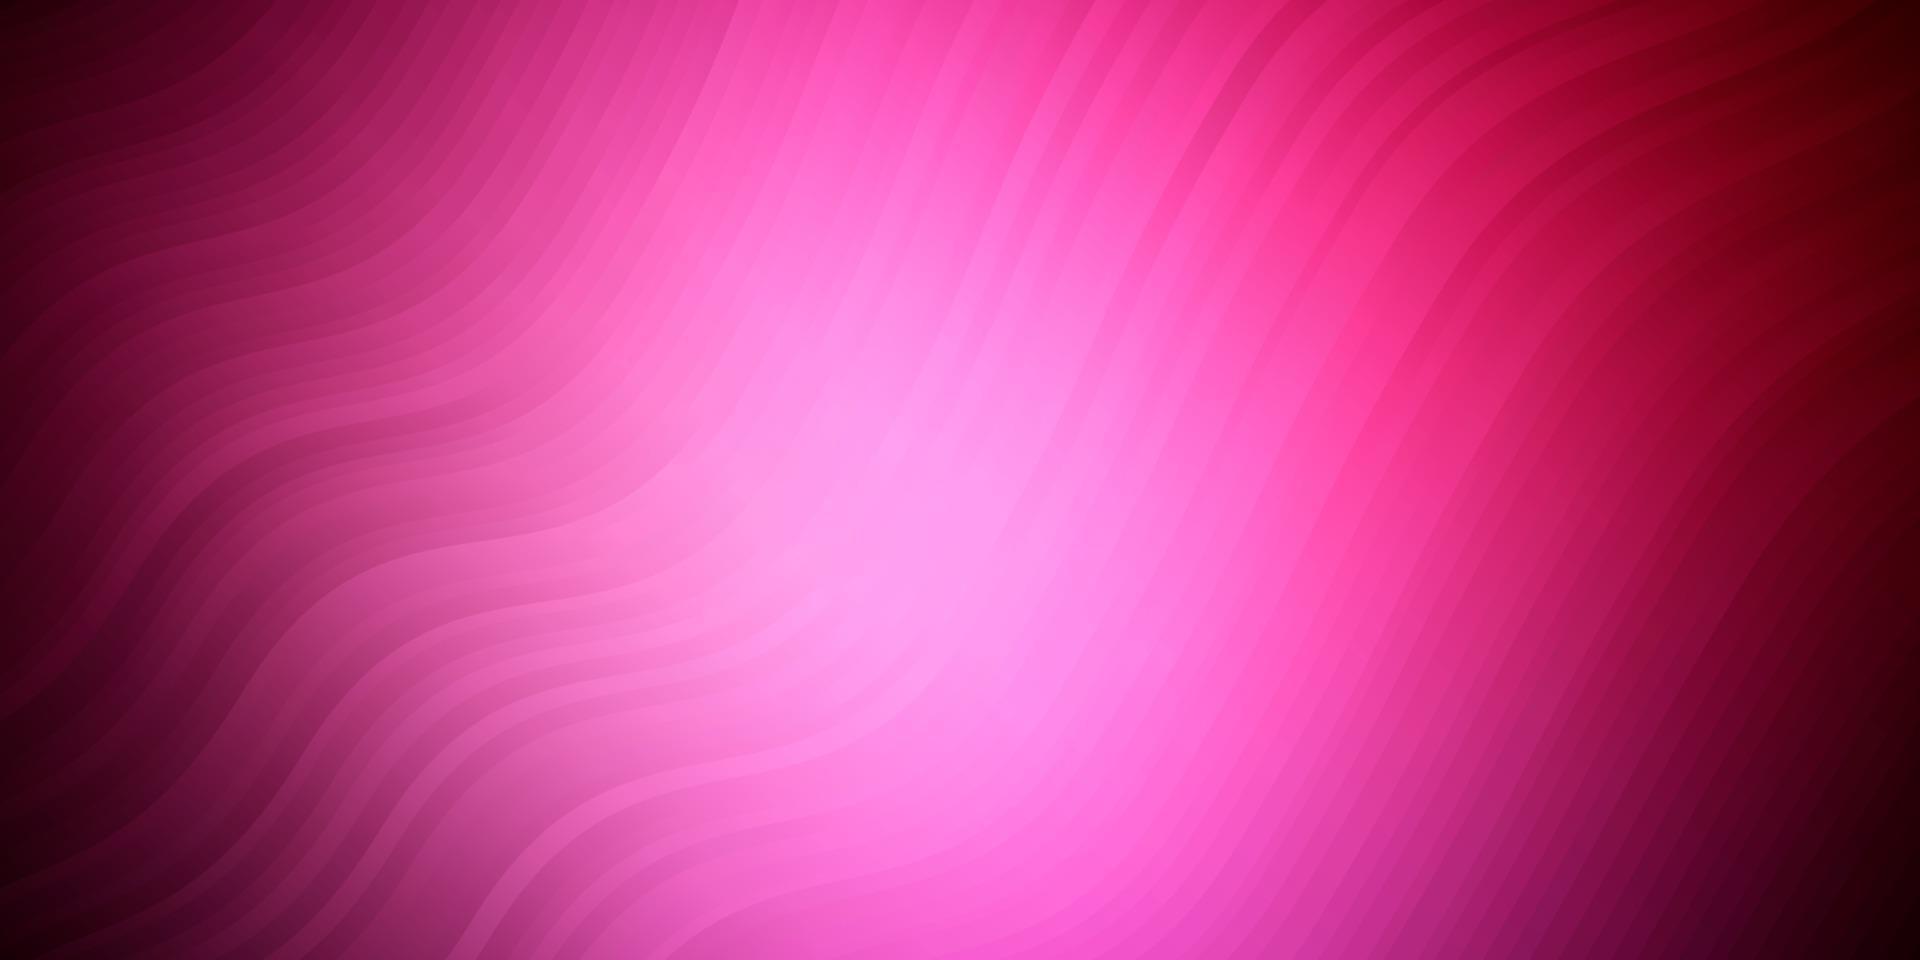 plantilla de vector de color rosa oscuro con líneas curvas.